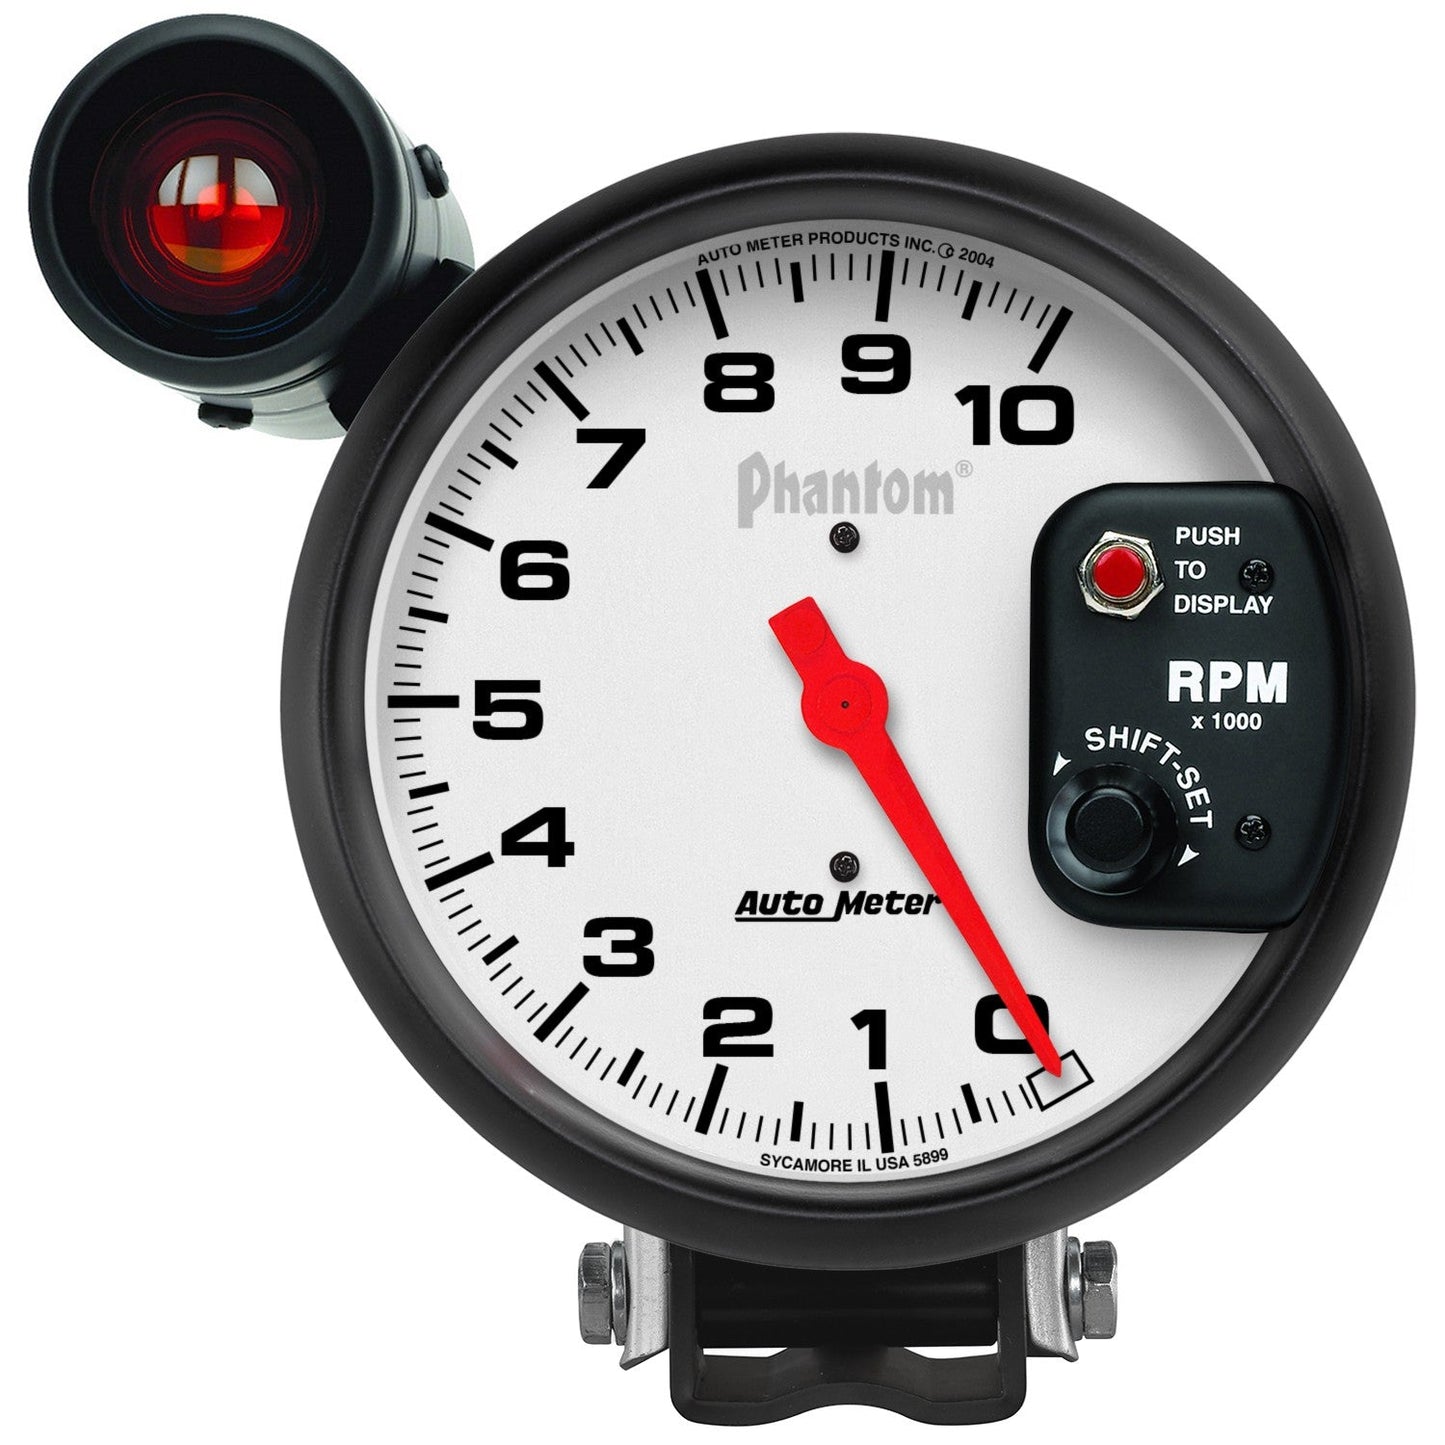 AutoMeter - TACÓMETRO DE PEDESTAL DE 5", 0-10,000 RPM, PHANTOM (5899)